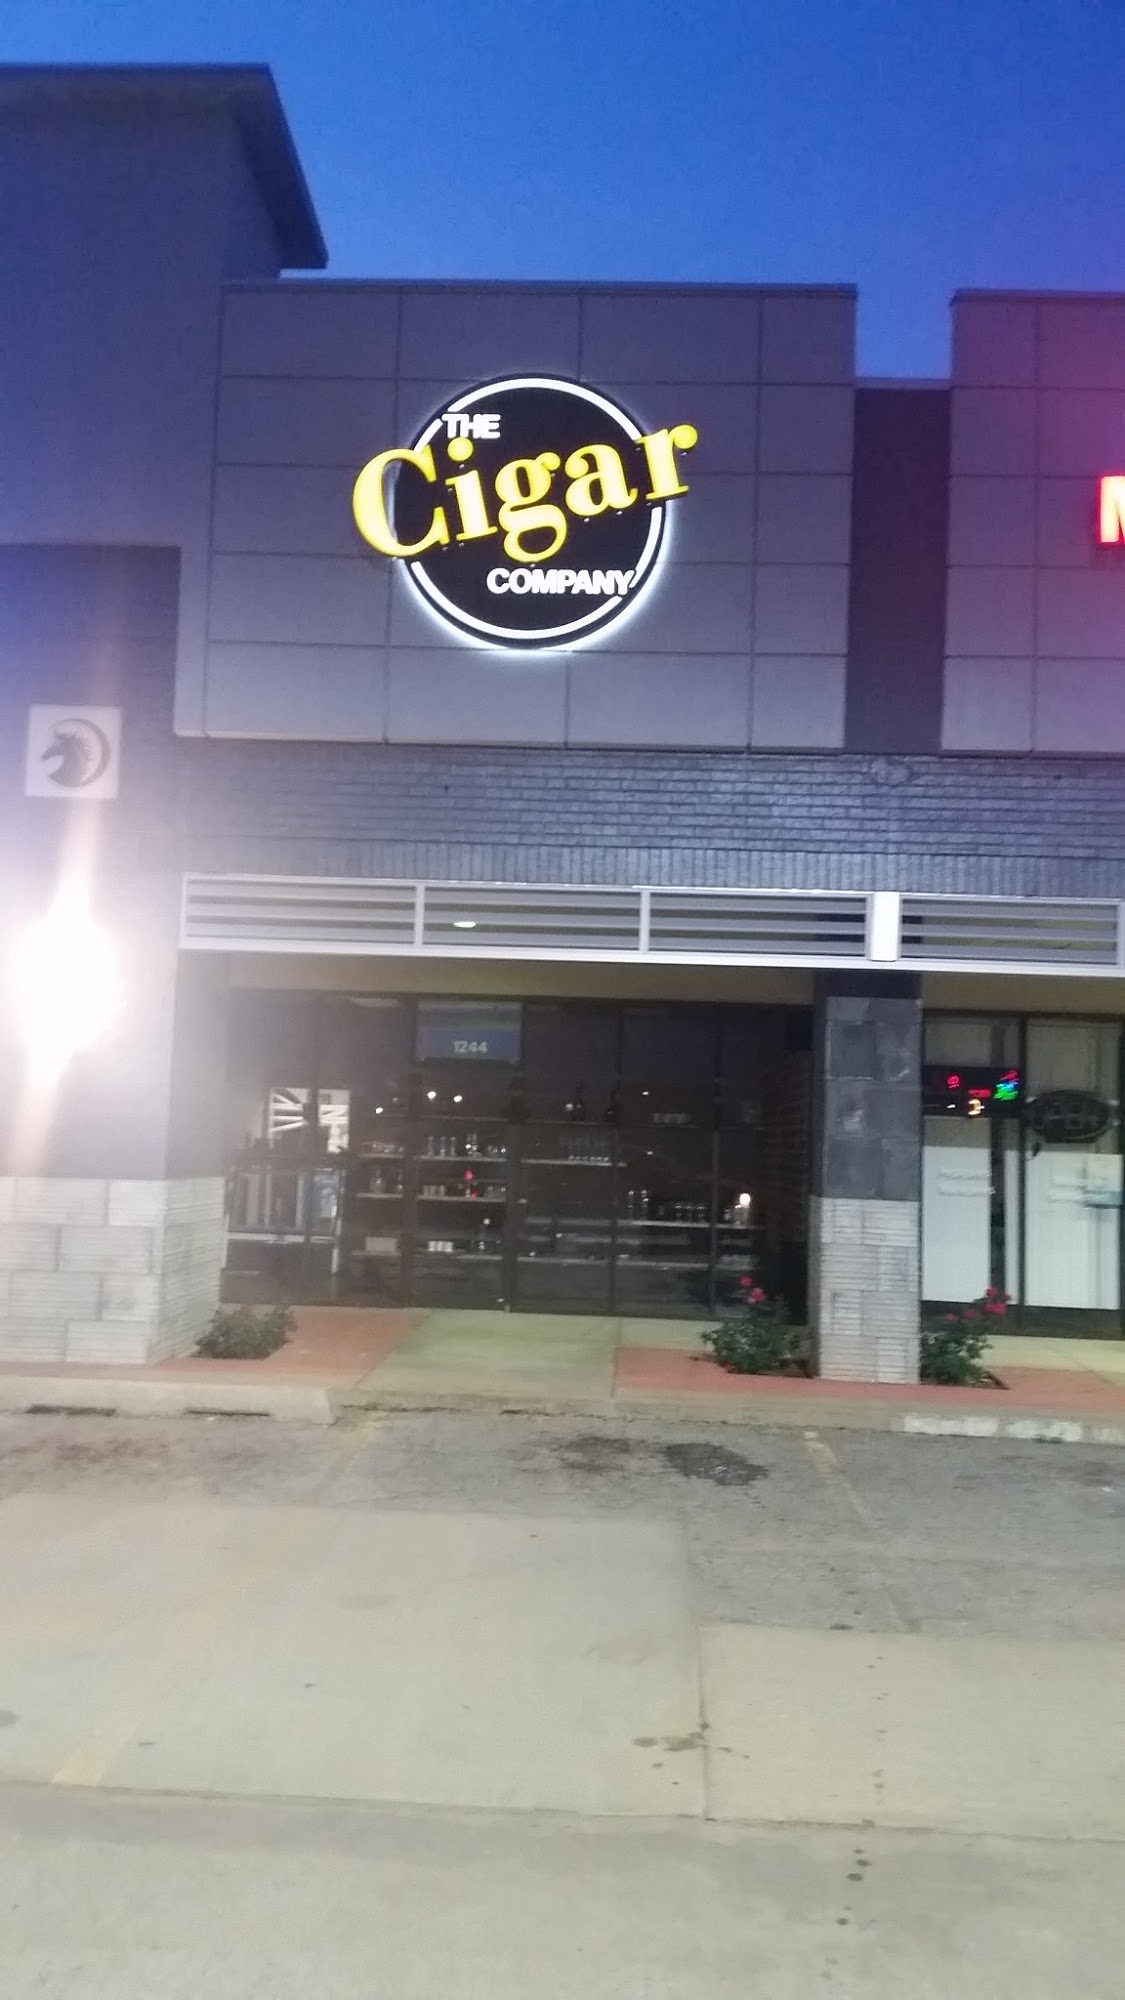 The Cigar Company